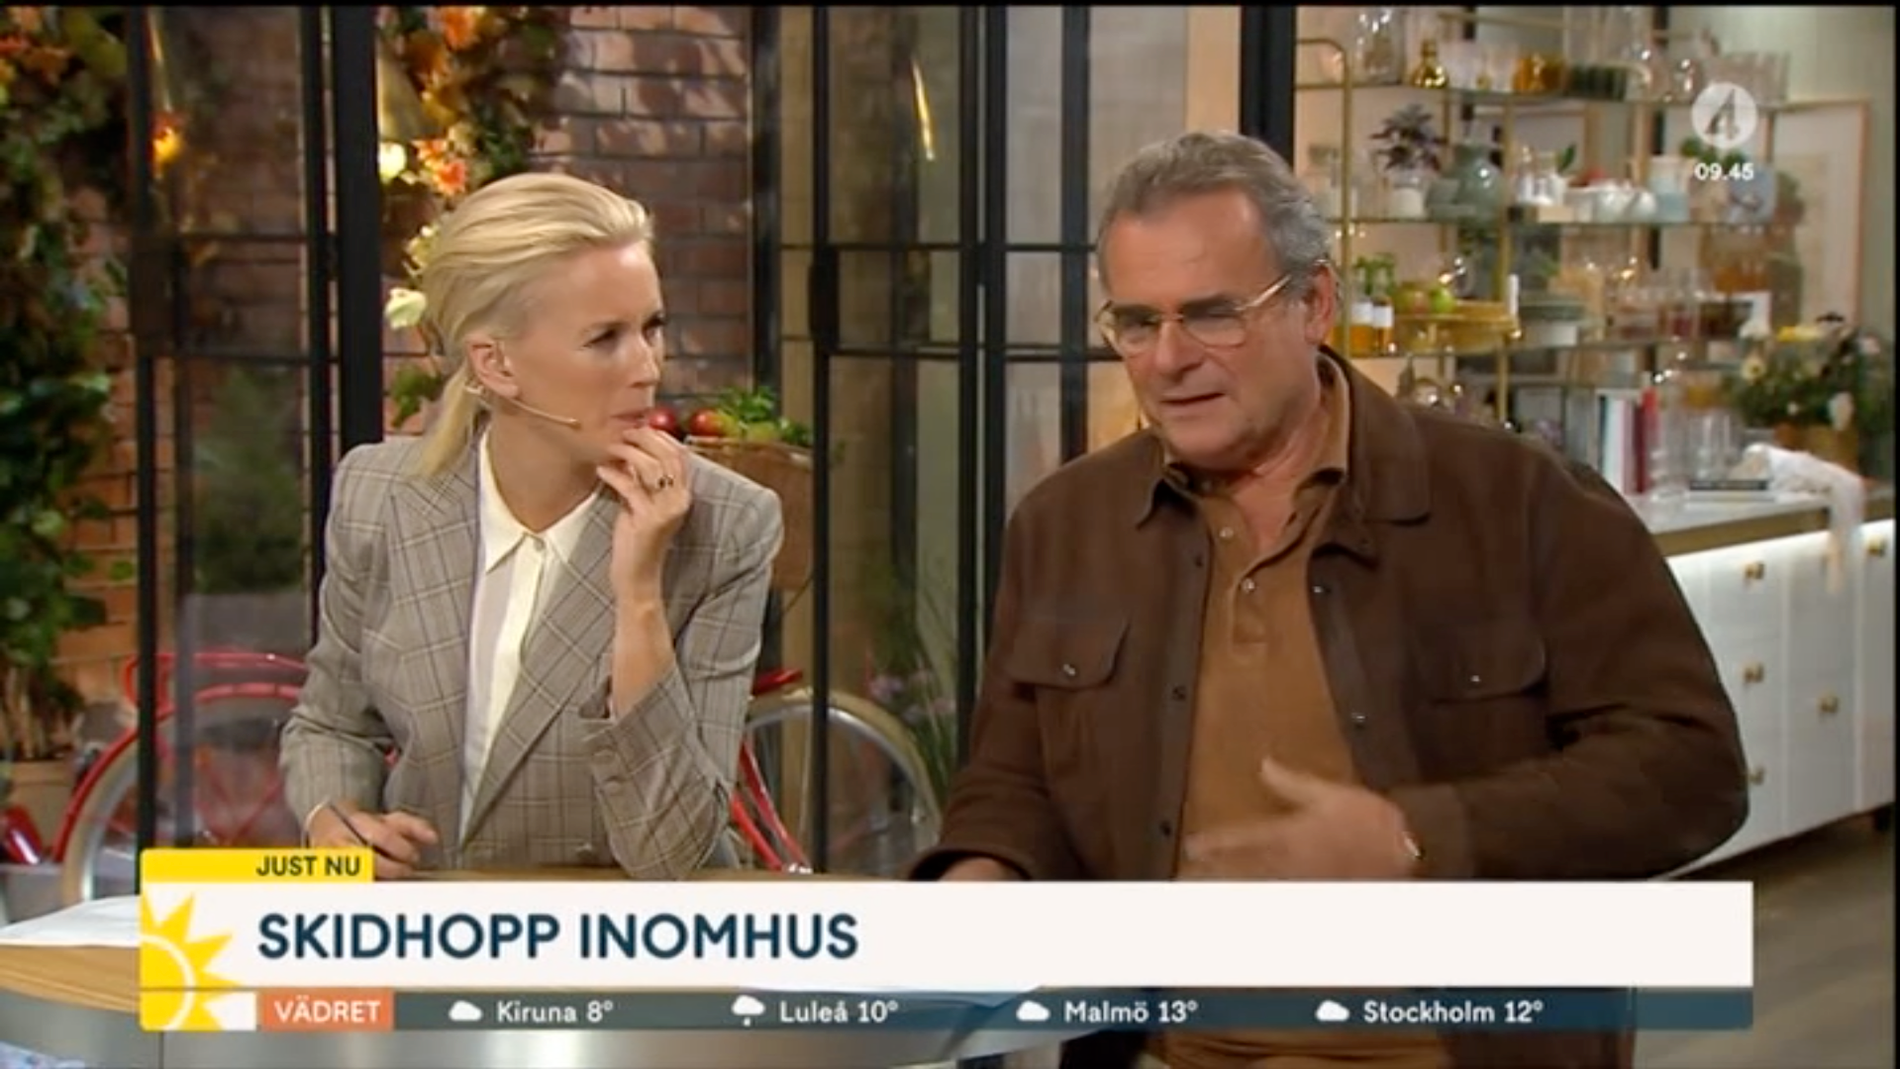 ”Oj, jäklar”. Jenny Strömstedt och Steffo Törnquist kan bara chockat se på från tv-studion när kollegan skadat sig.